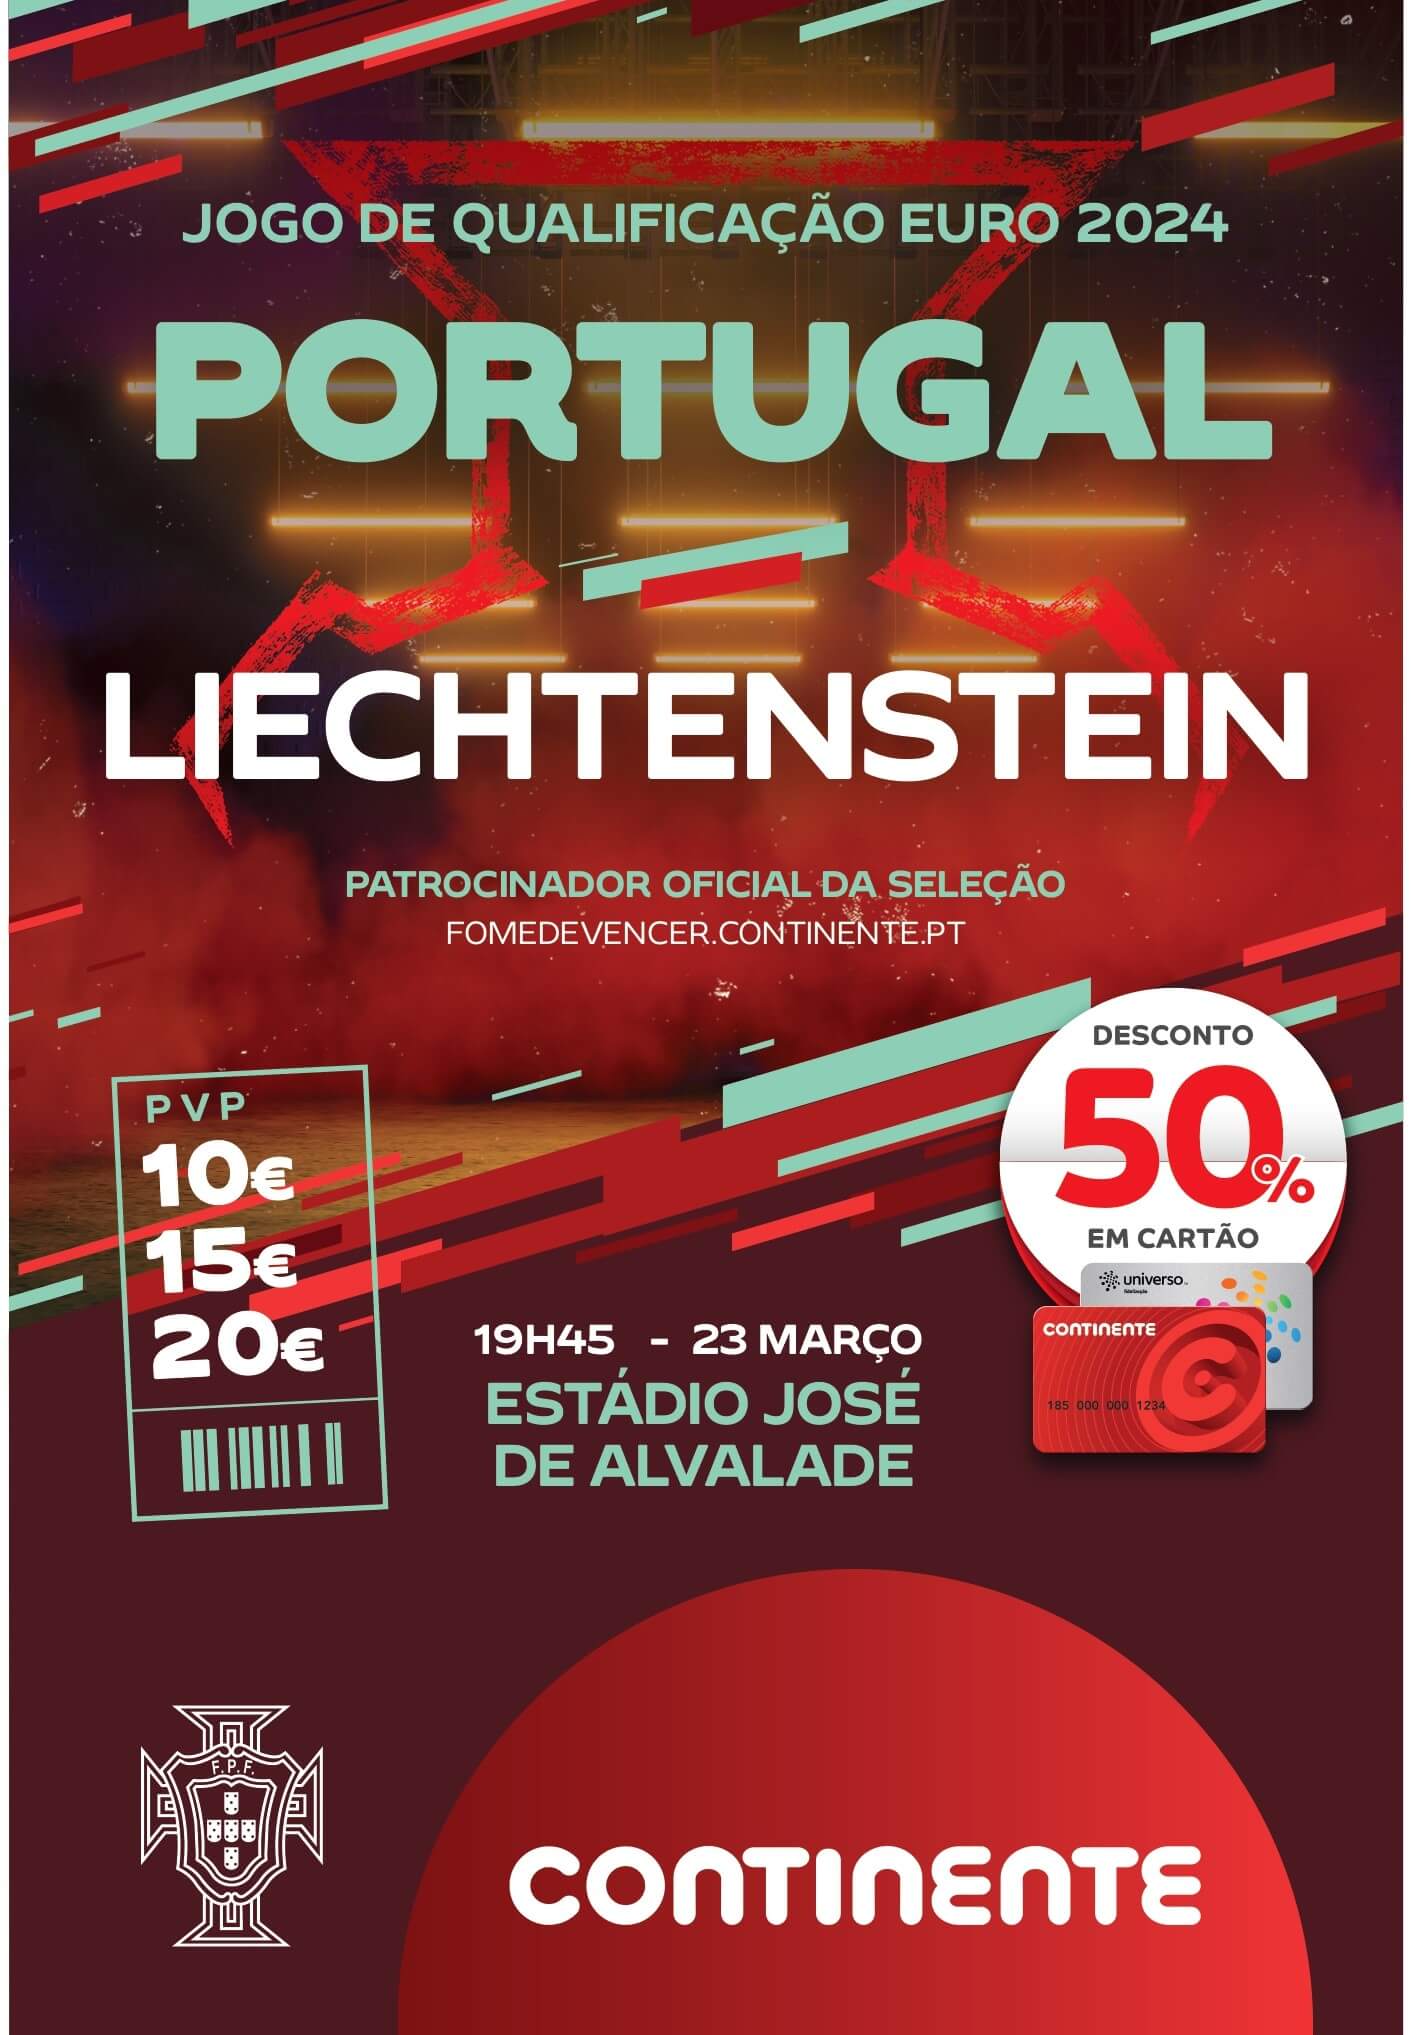 Jogos online Português Europeu